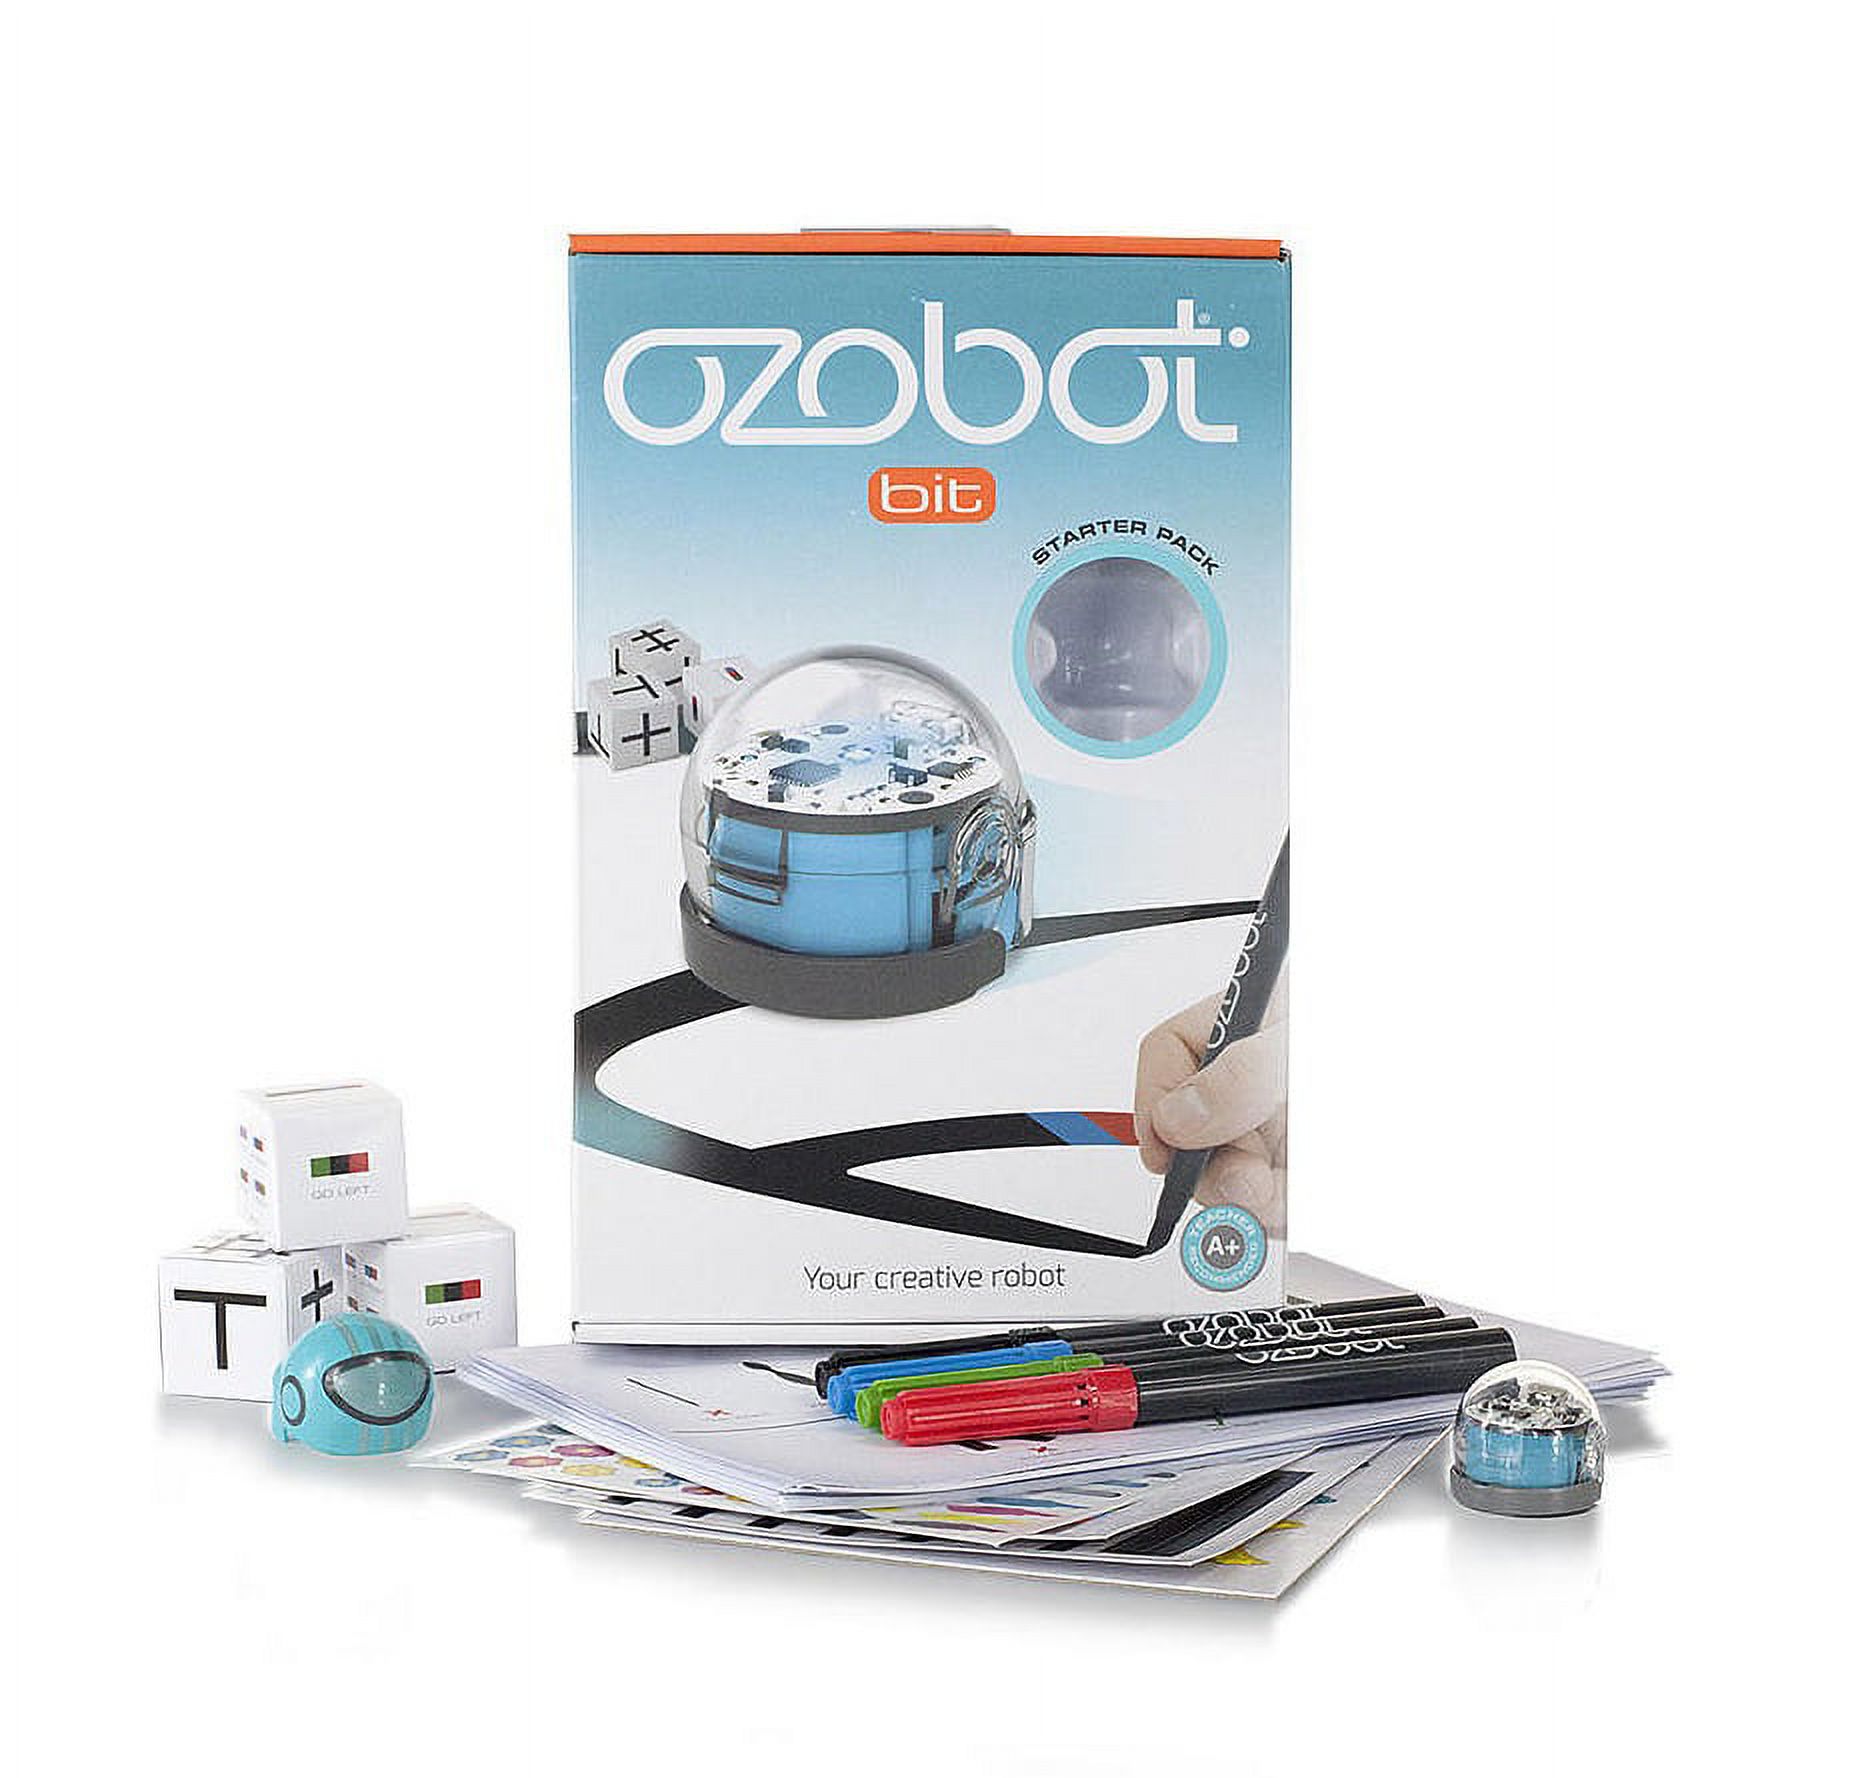 Ozobot Bit Starter Pack, Blue - image 2 of 8